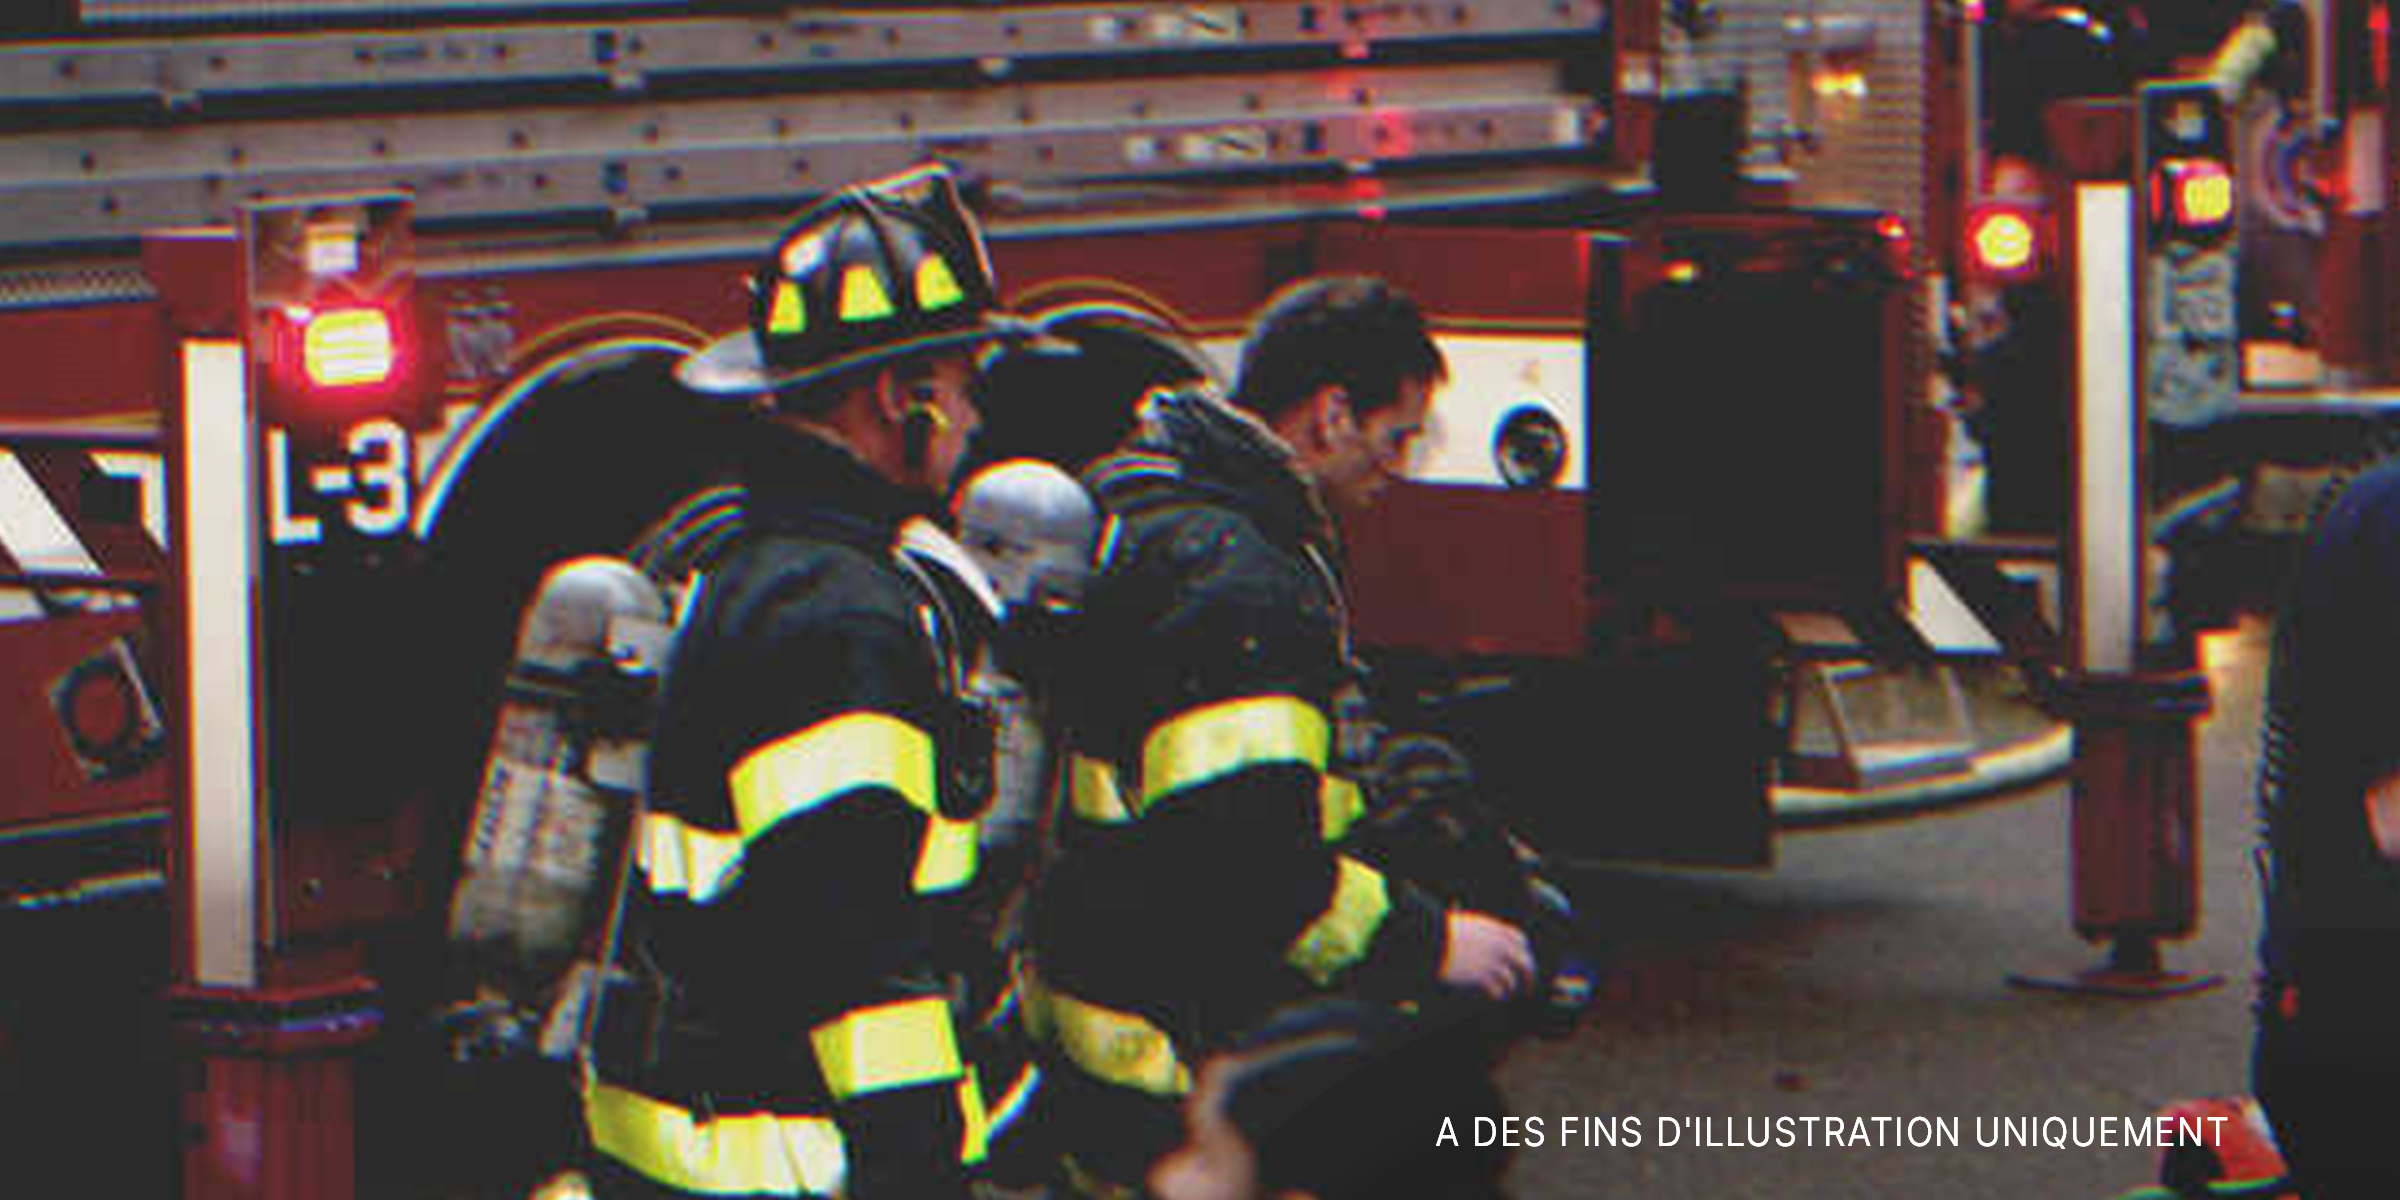 Des pompiers en service | Source : Flickr/bizarrellama